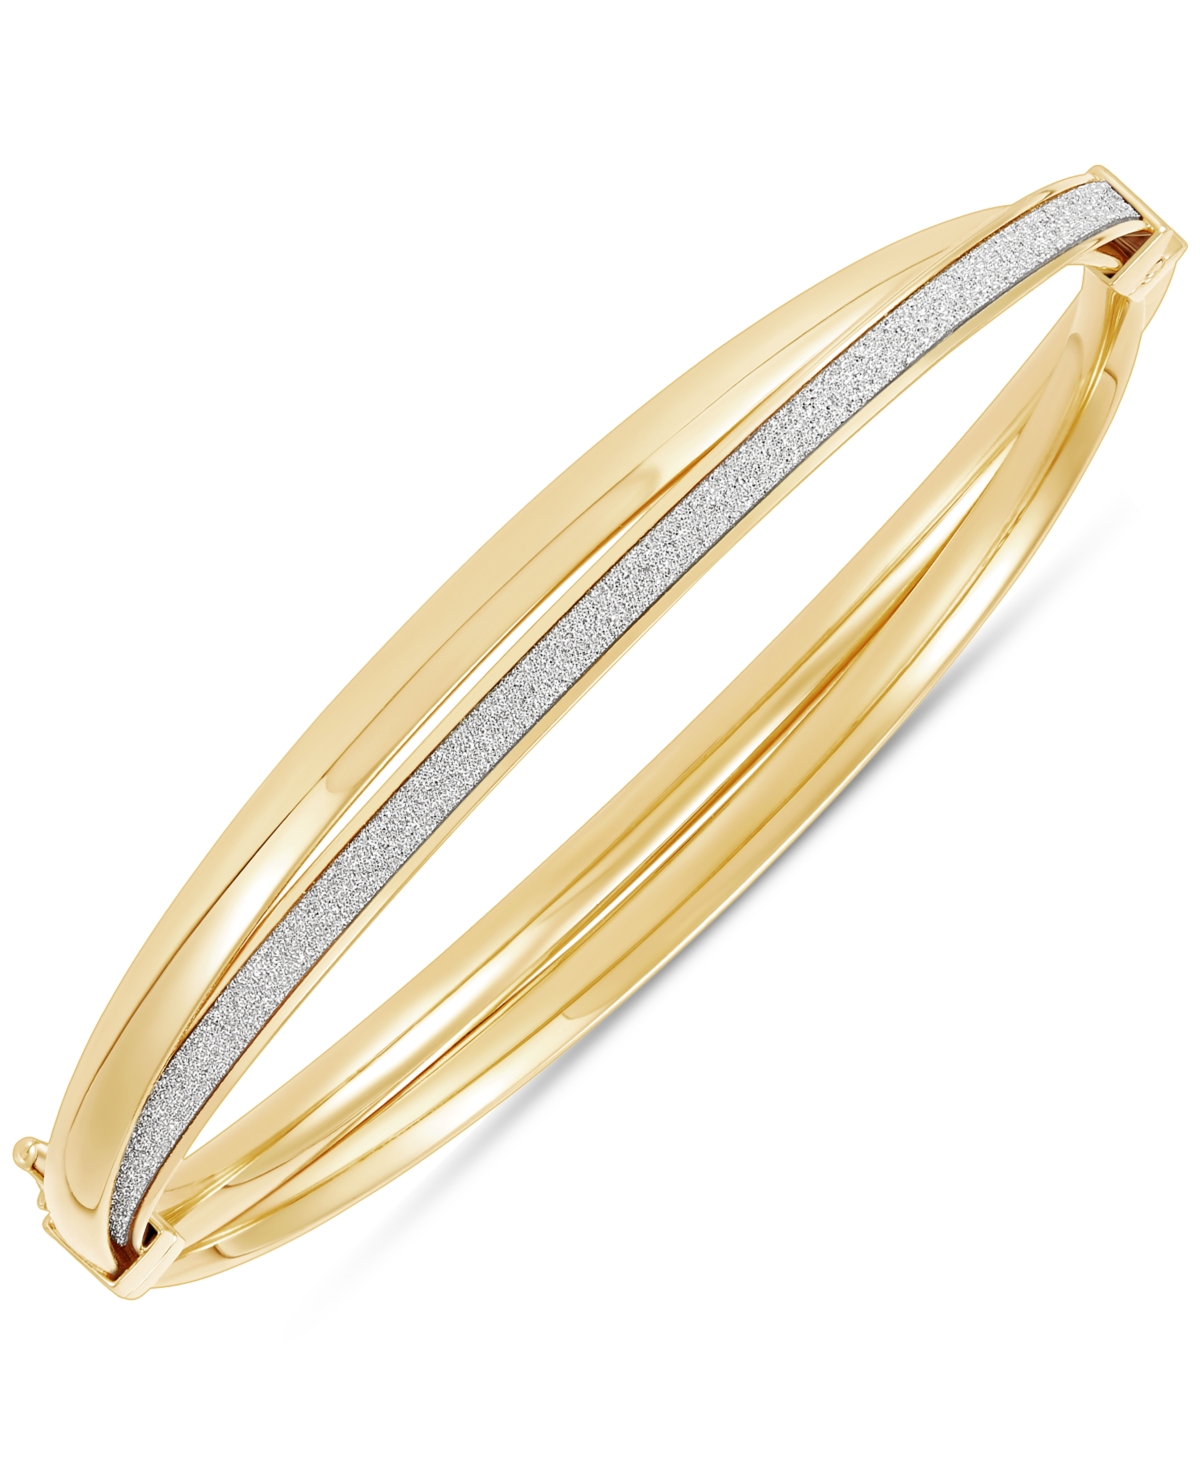 Glitter Crossover Bangle Bracelet in 10k Gold - Gold